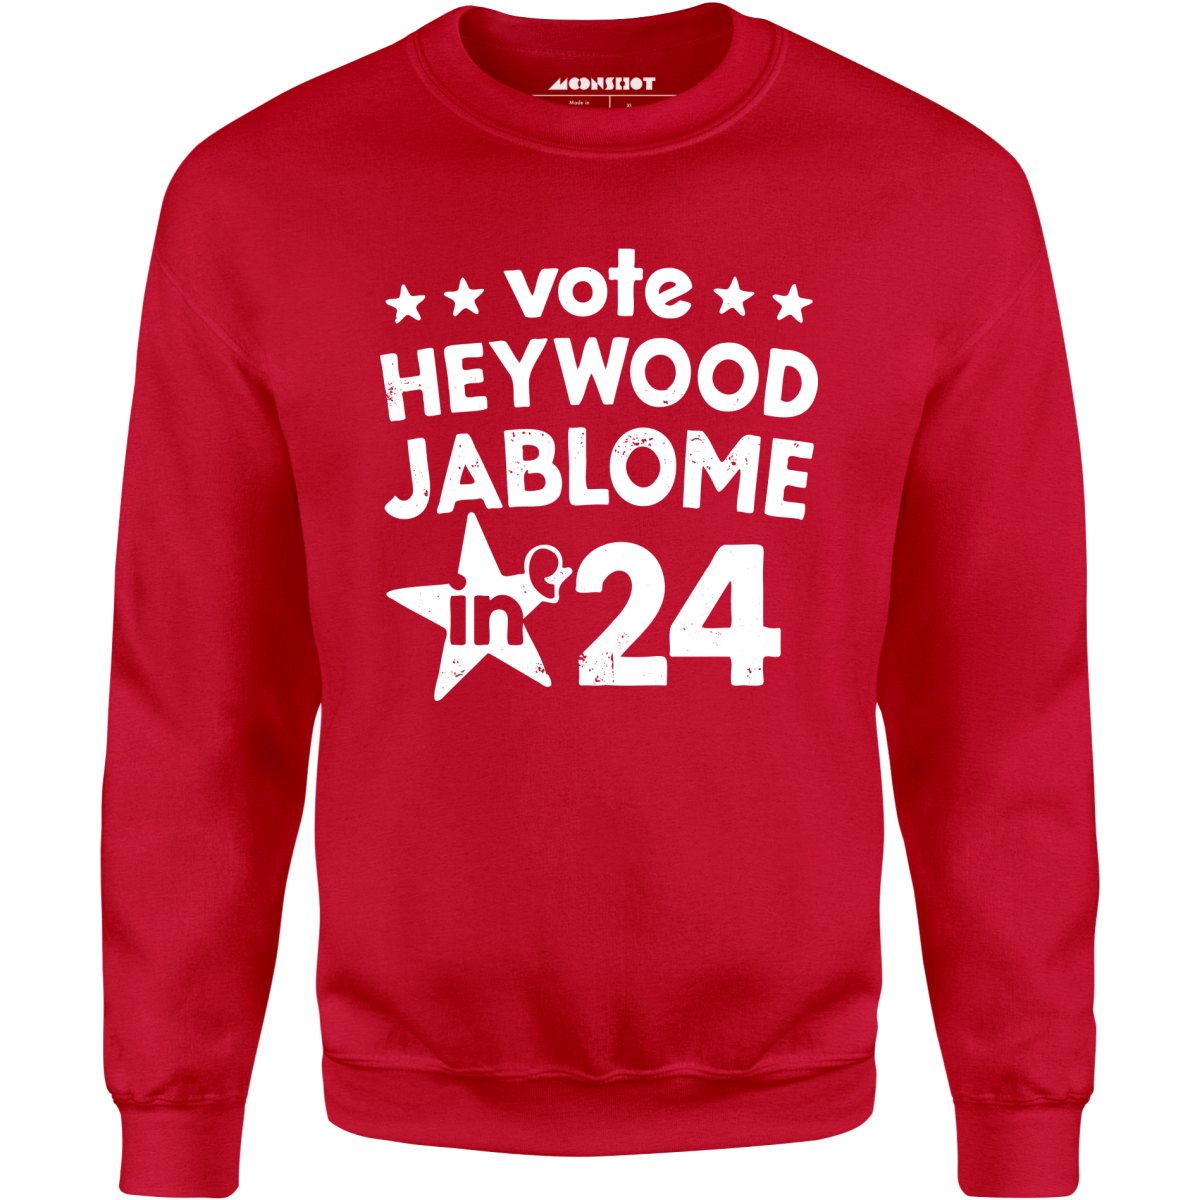 Heywood Jablome 2024 - Unisex Sweatshirt